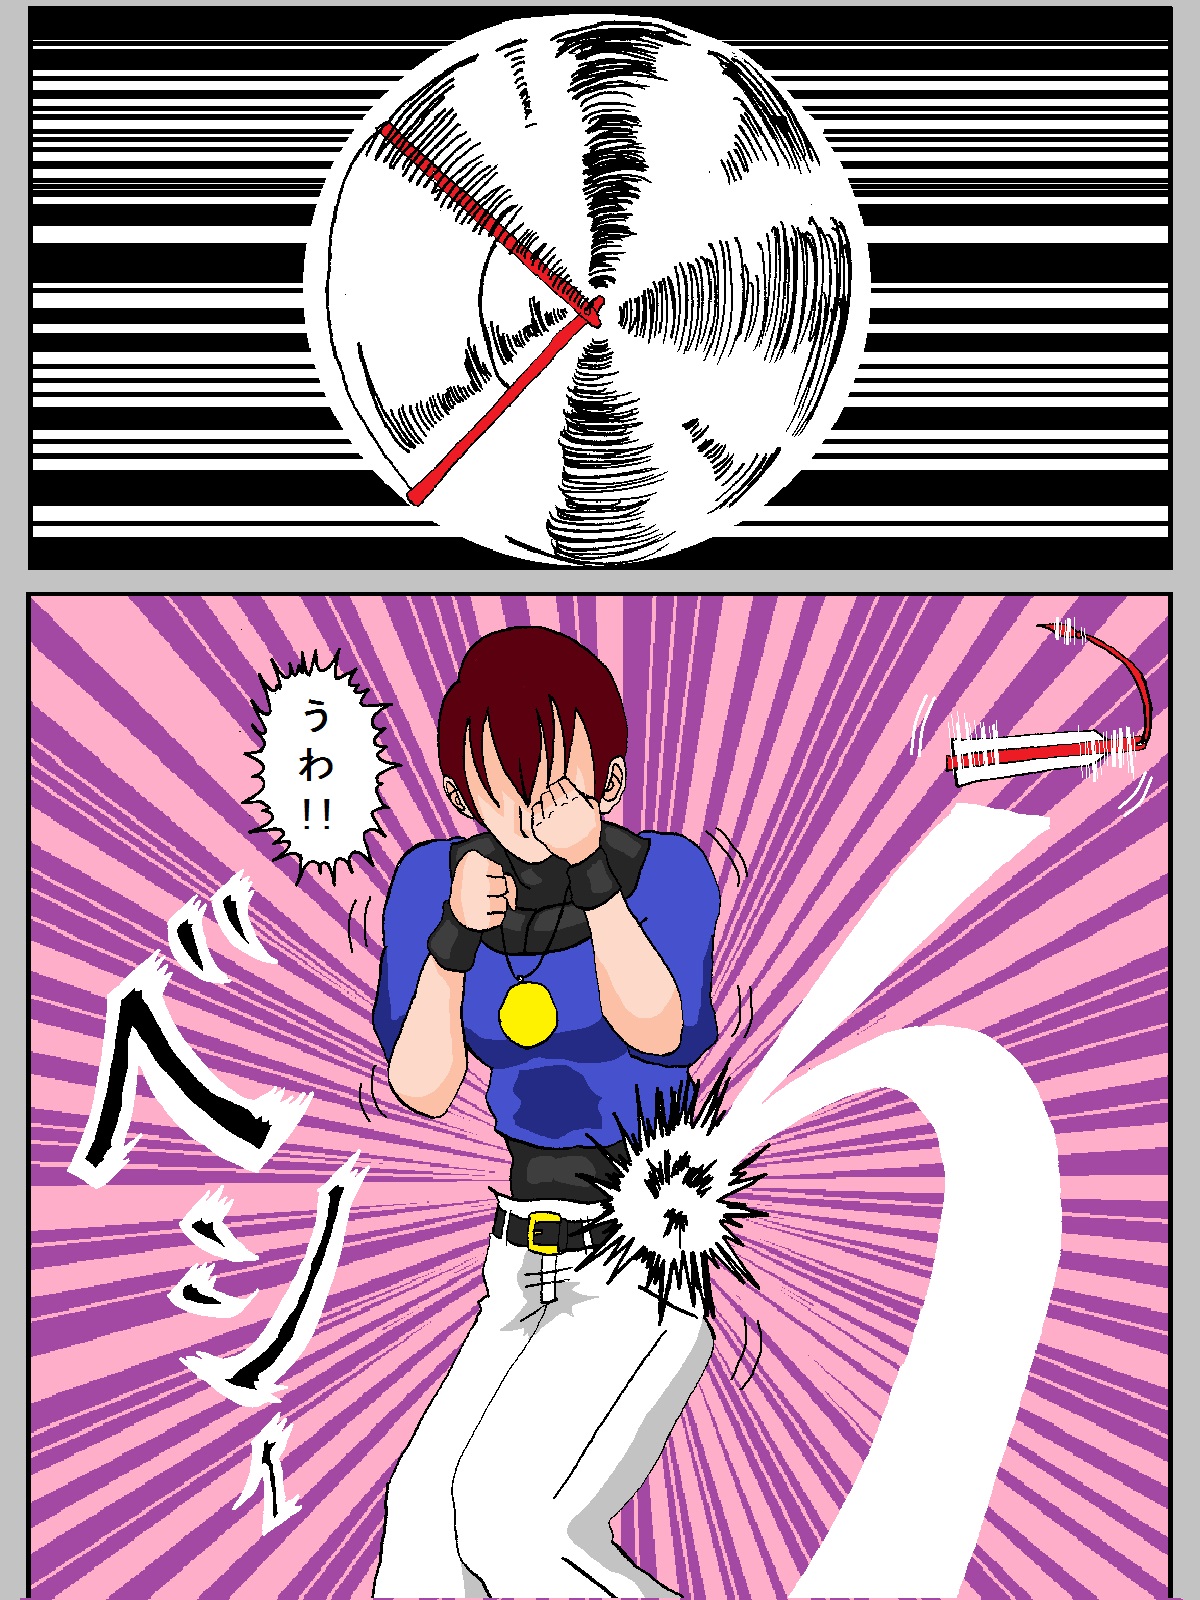 [舞狩] Mai-chan vs Chris-kun (King of Fighters) page 8 full